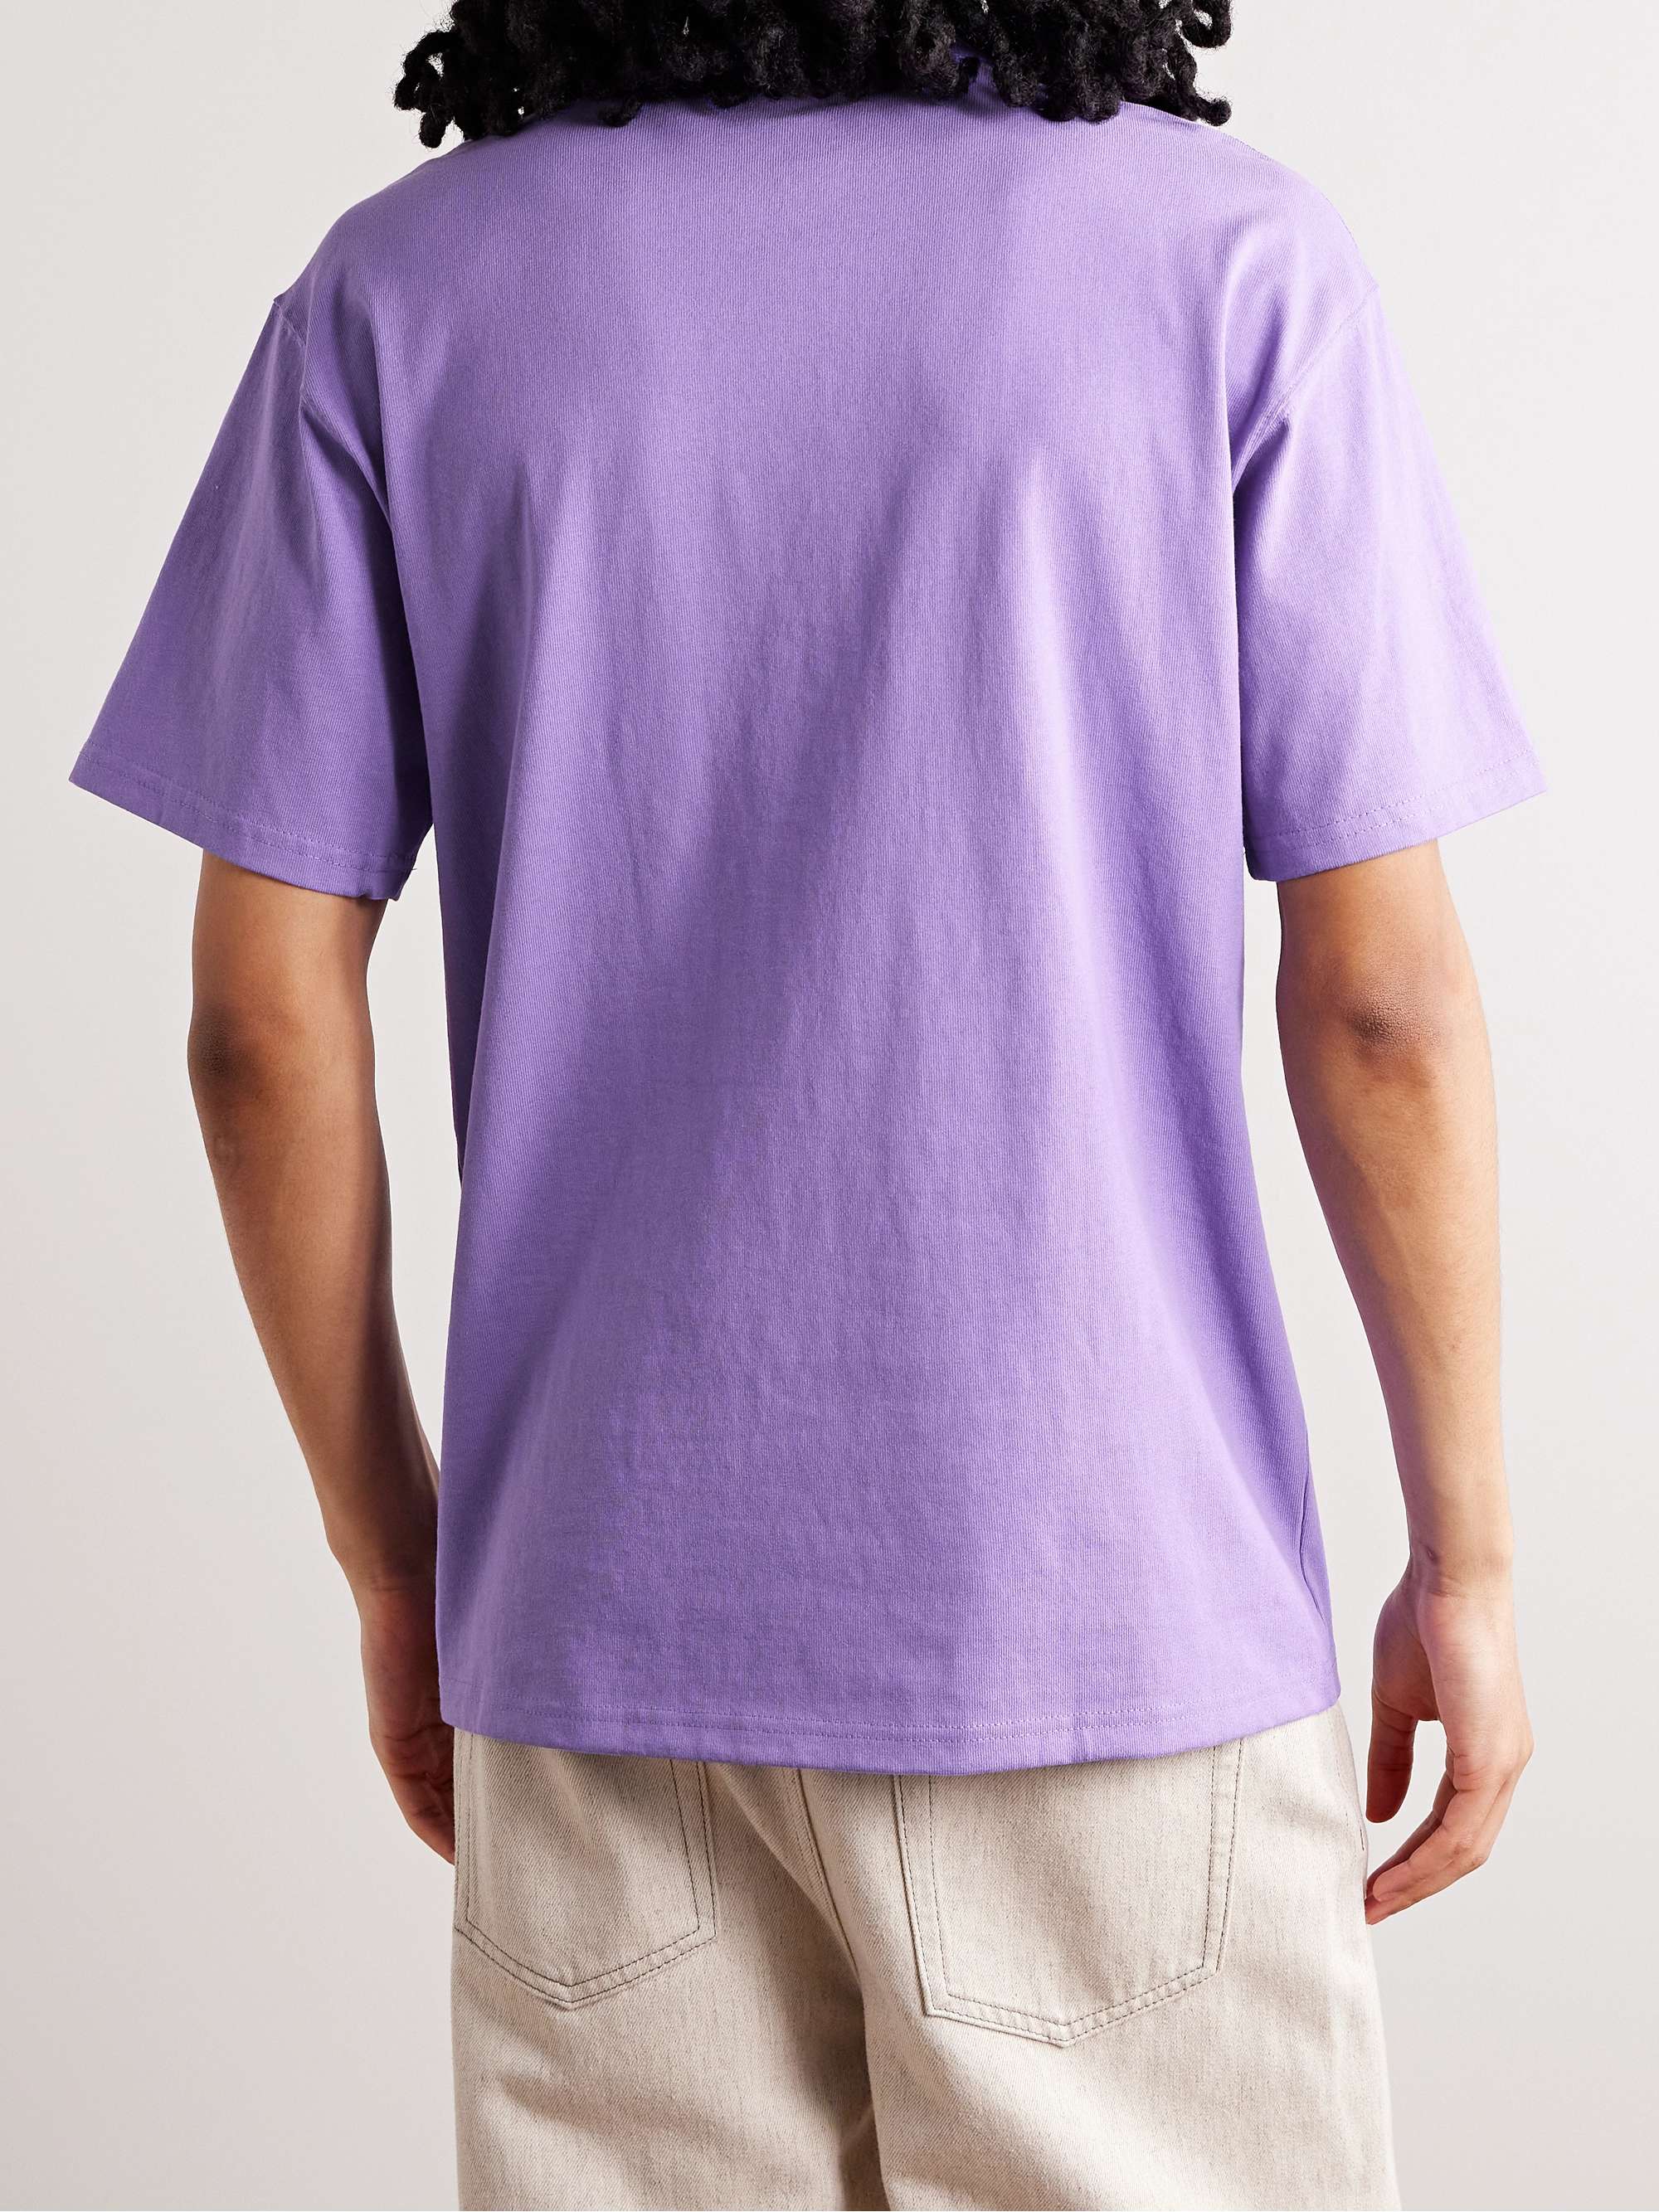 NIKE Sportswear Premium Essentials Logo-Embroidered Cotton-Jersey T-Shirt